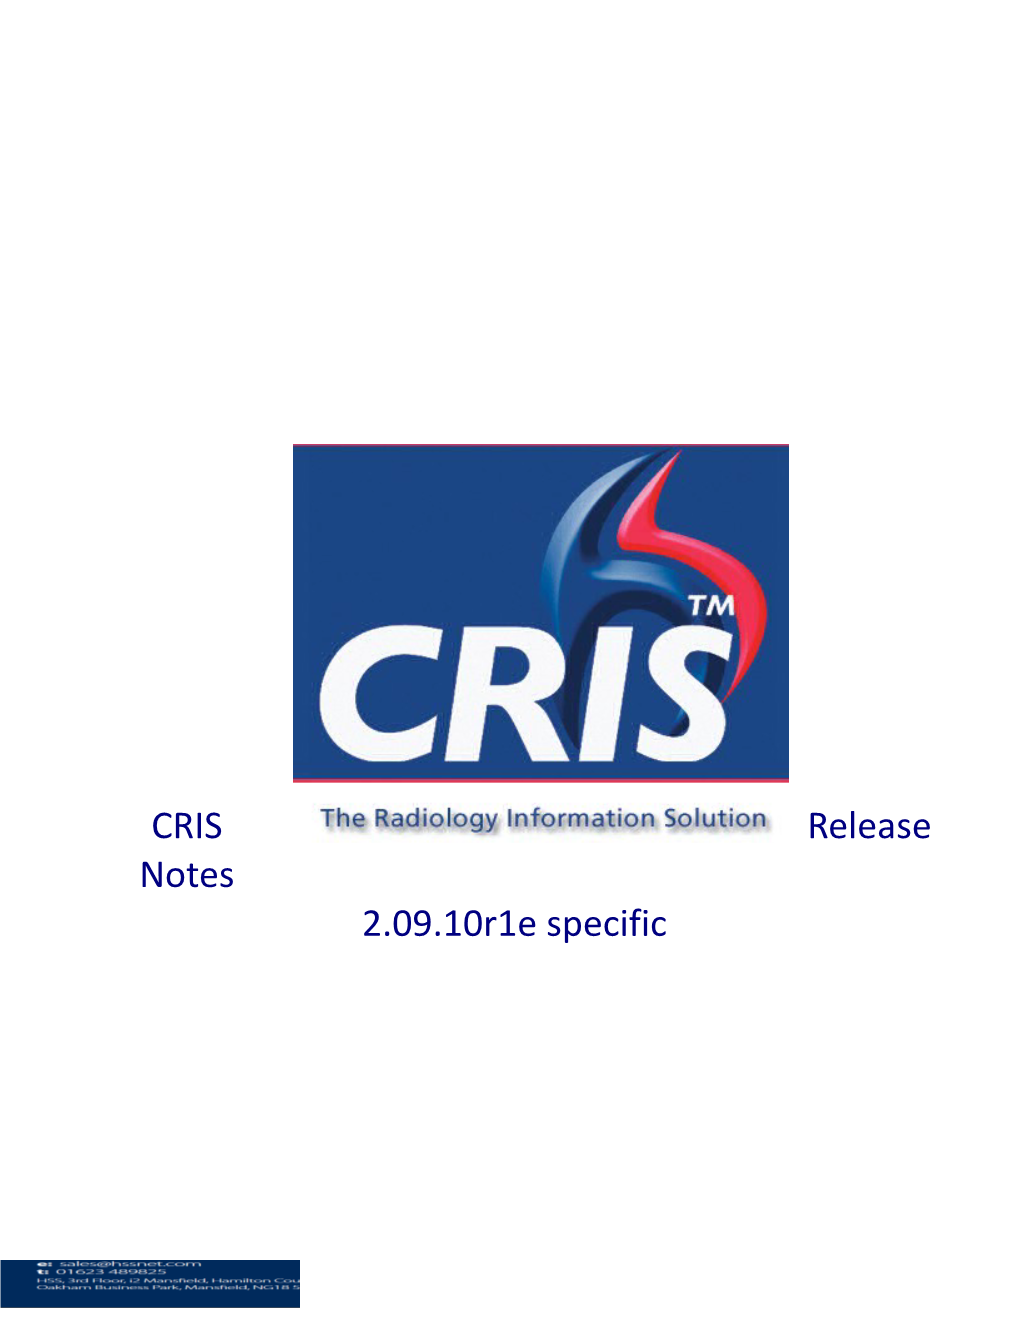 CRIS Release Notes 2.09.10R1e Specific